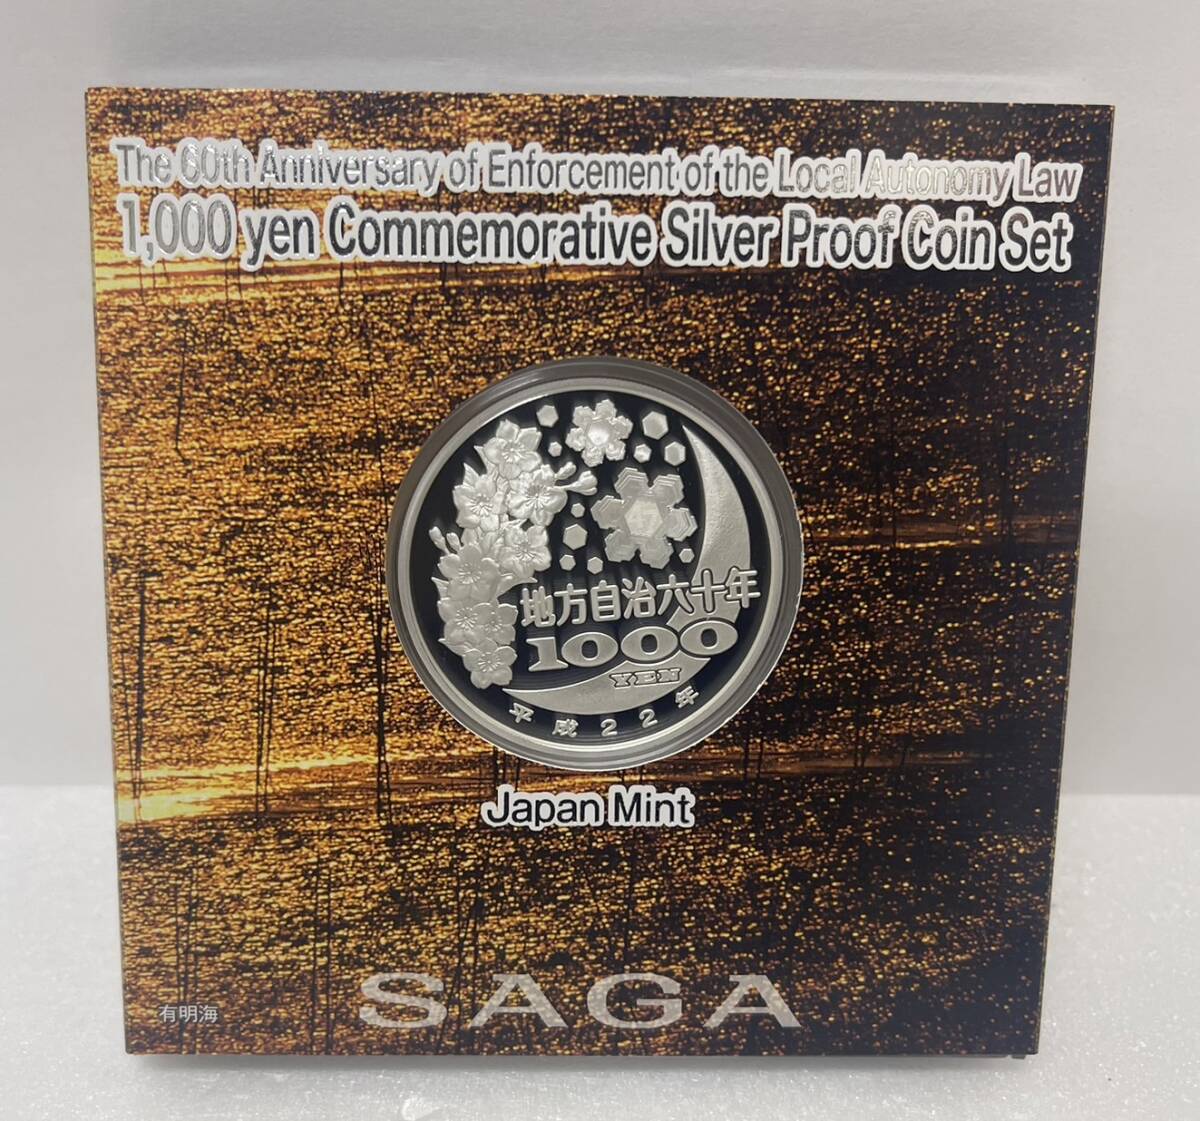 【ST18969MY】 неиспользуемый    Сага   местность   самоуправление  ... ...60 юбилей  1000  йен  серебряная монета  ... ... крыша  деньги (монета)  C комплект    воспоминание   серебряная монета    цвет  монета   монетный двор   1000  йен  серебряная монета  